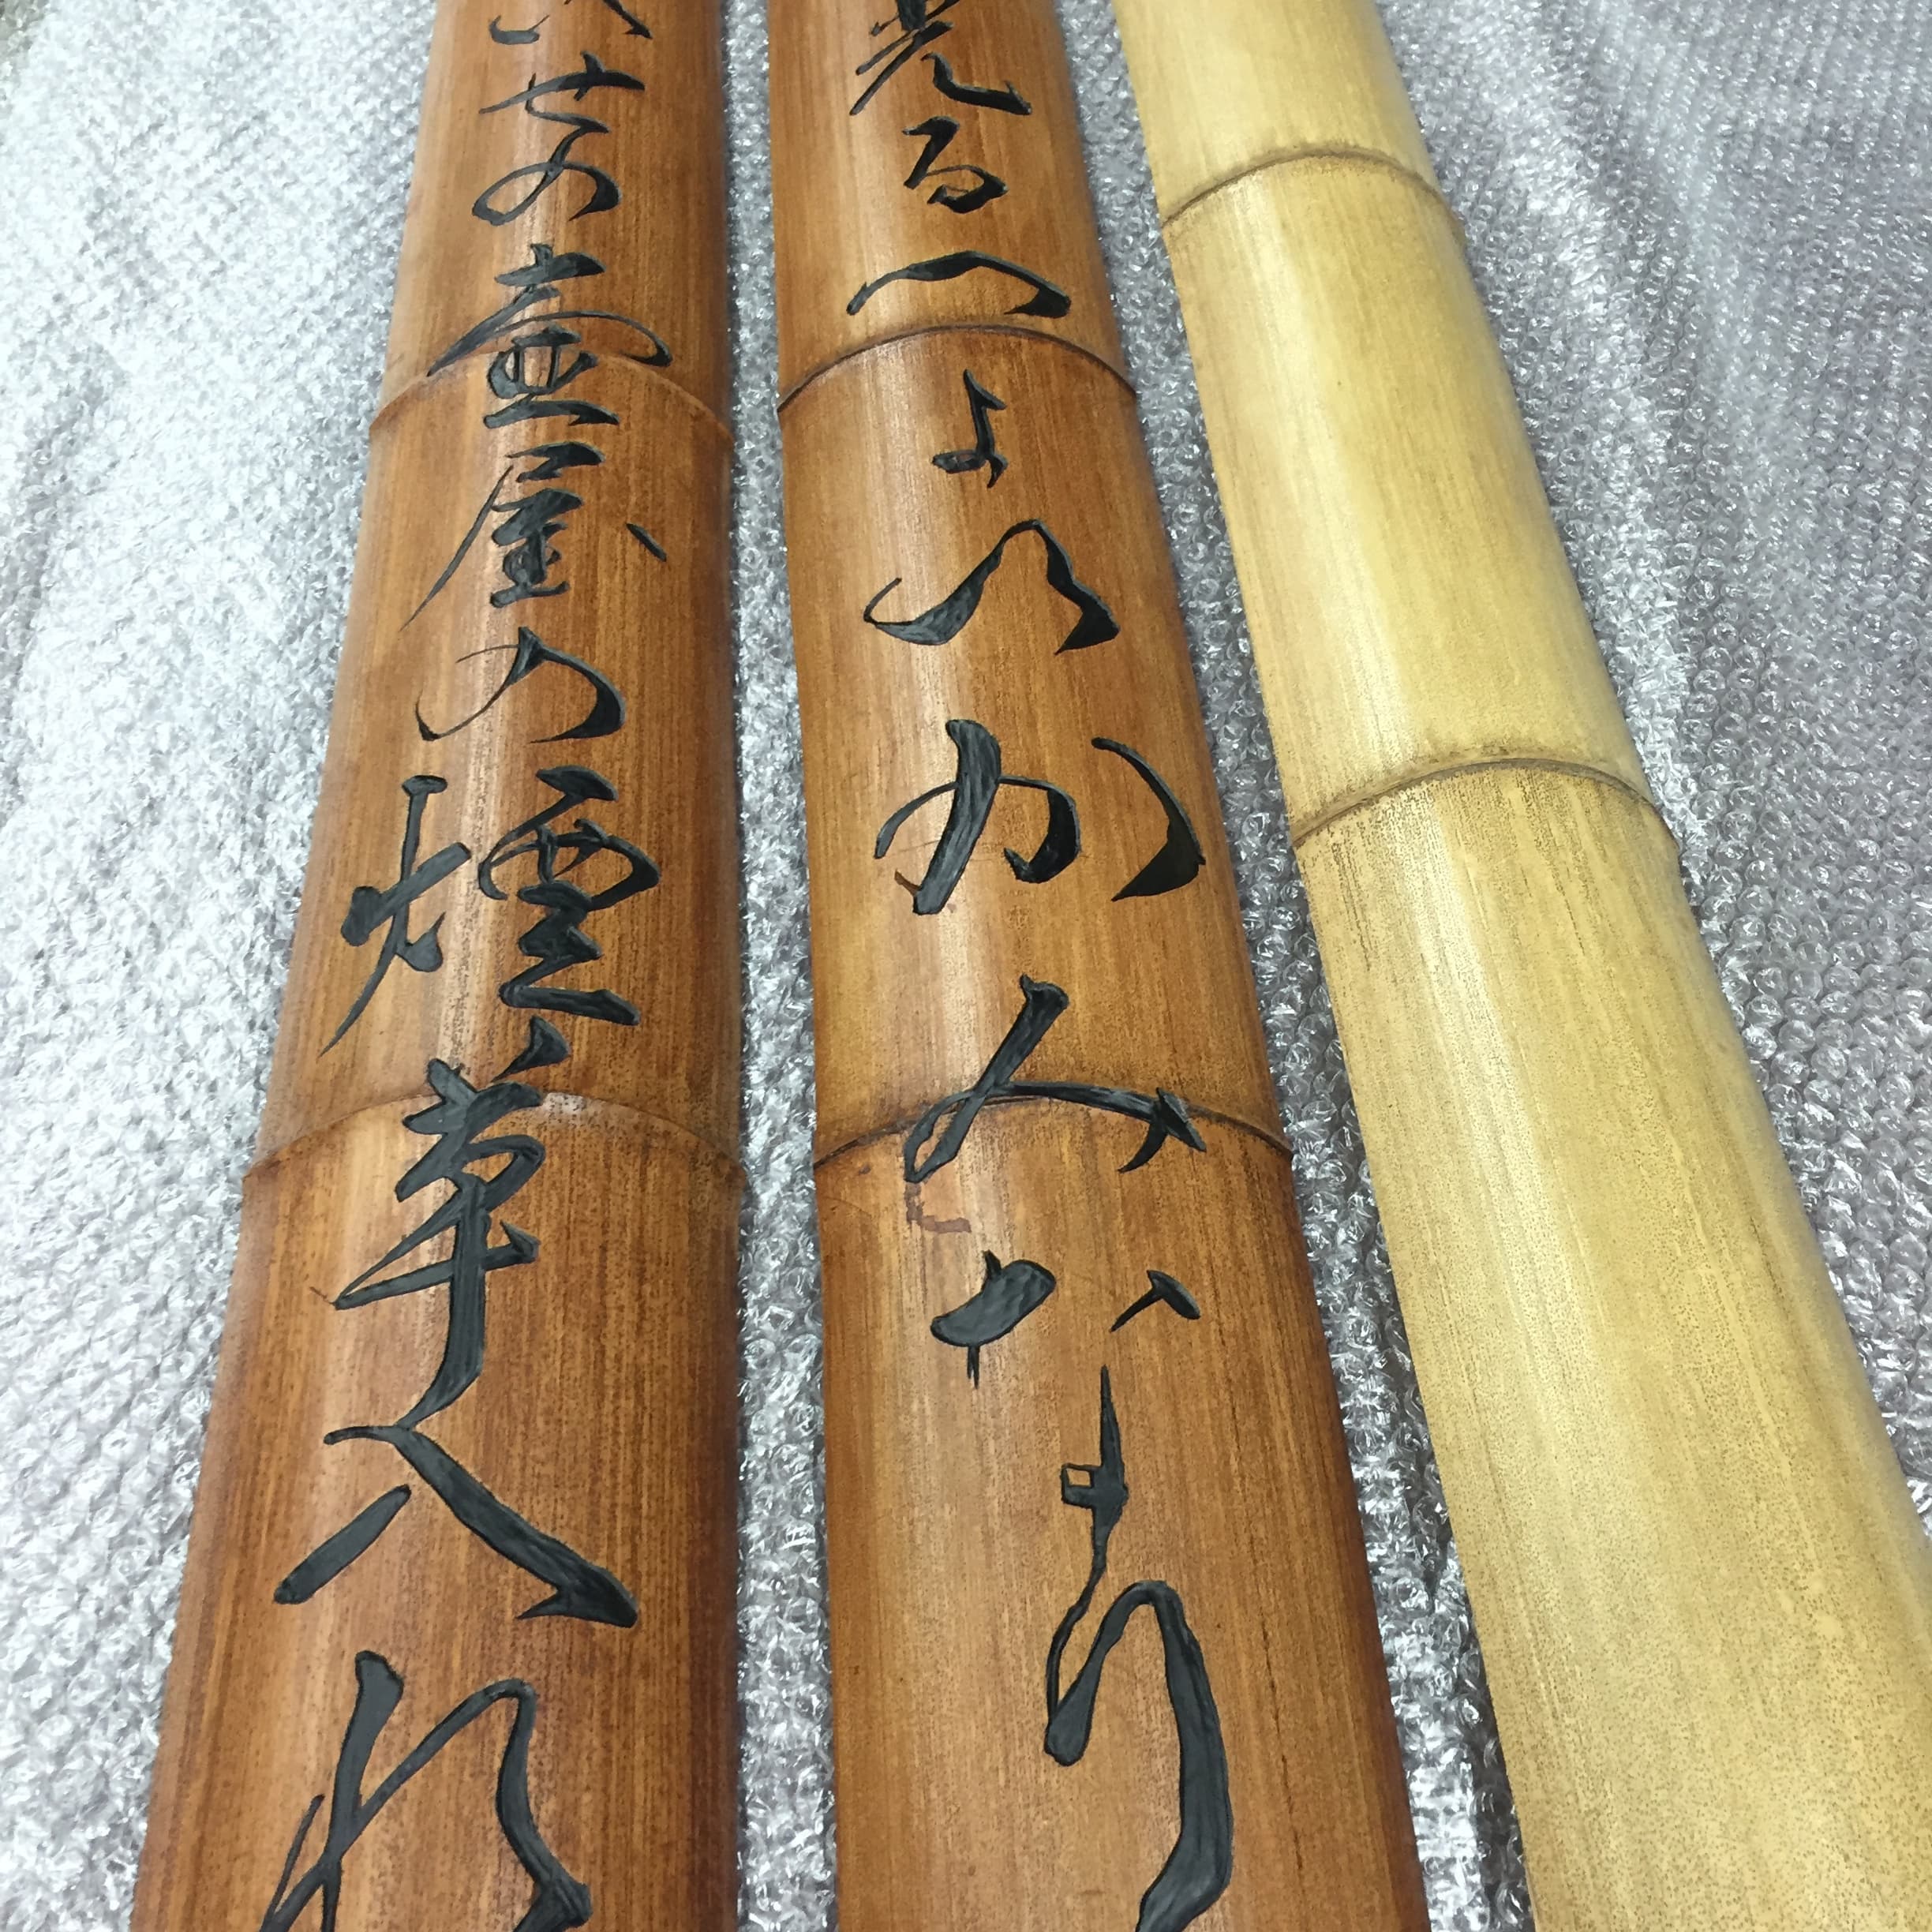 竹を使い文字を彫った工芸品店の看板